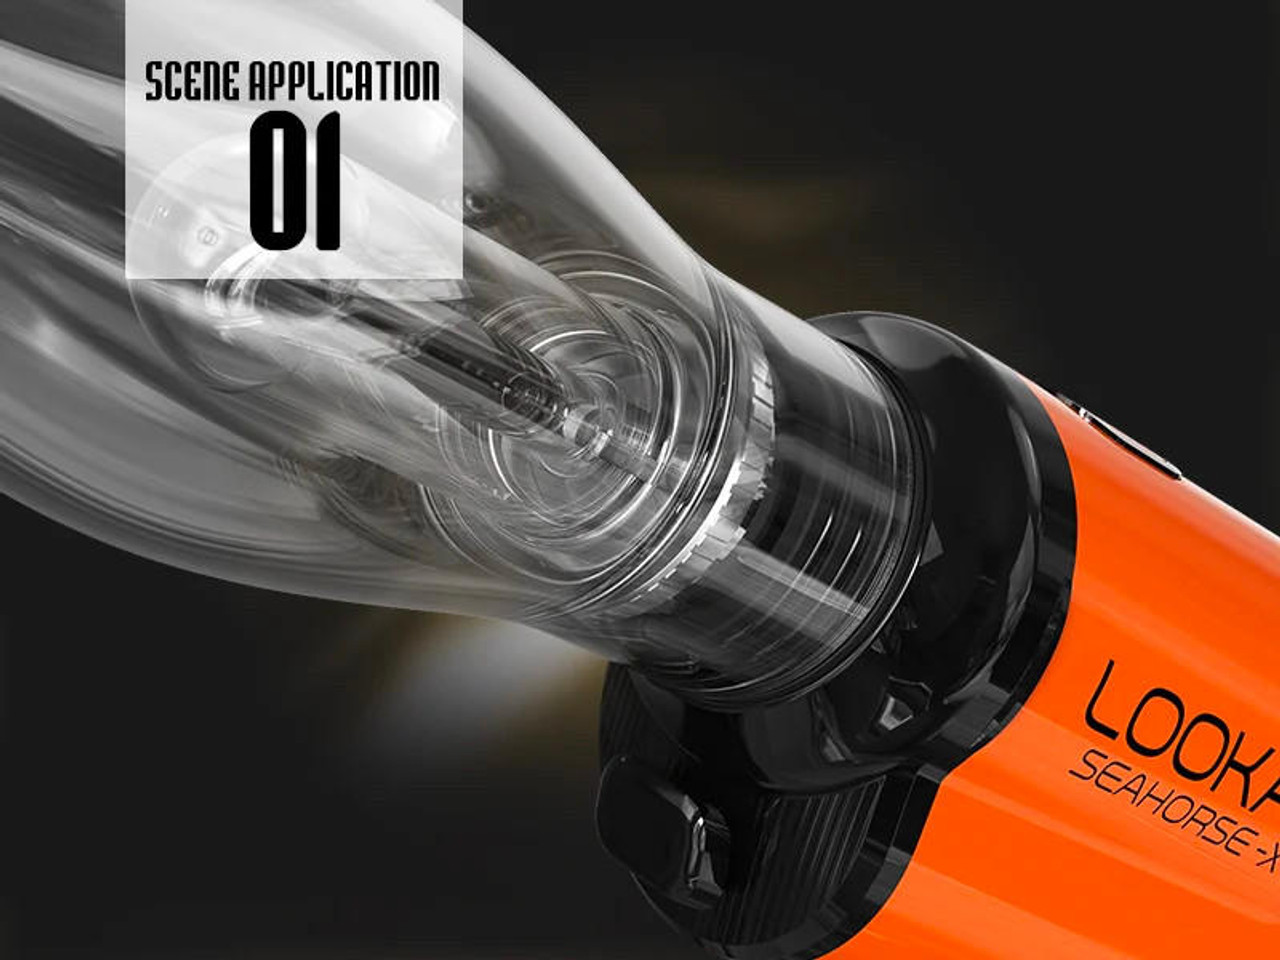 Lookah Seahorse X Portable E-Nectar in Collector, Orange and E-Nail 3 Wax Pen, 1